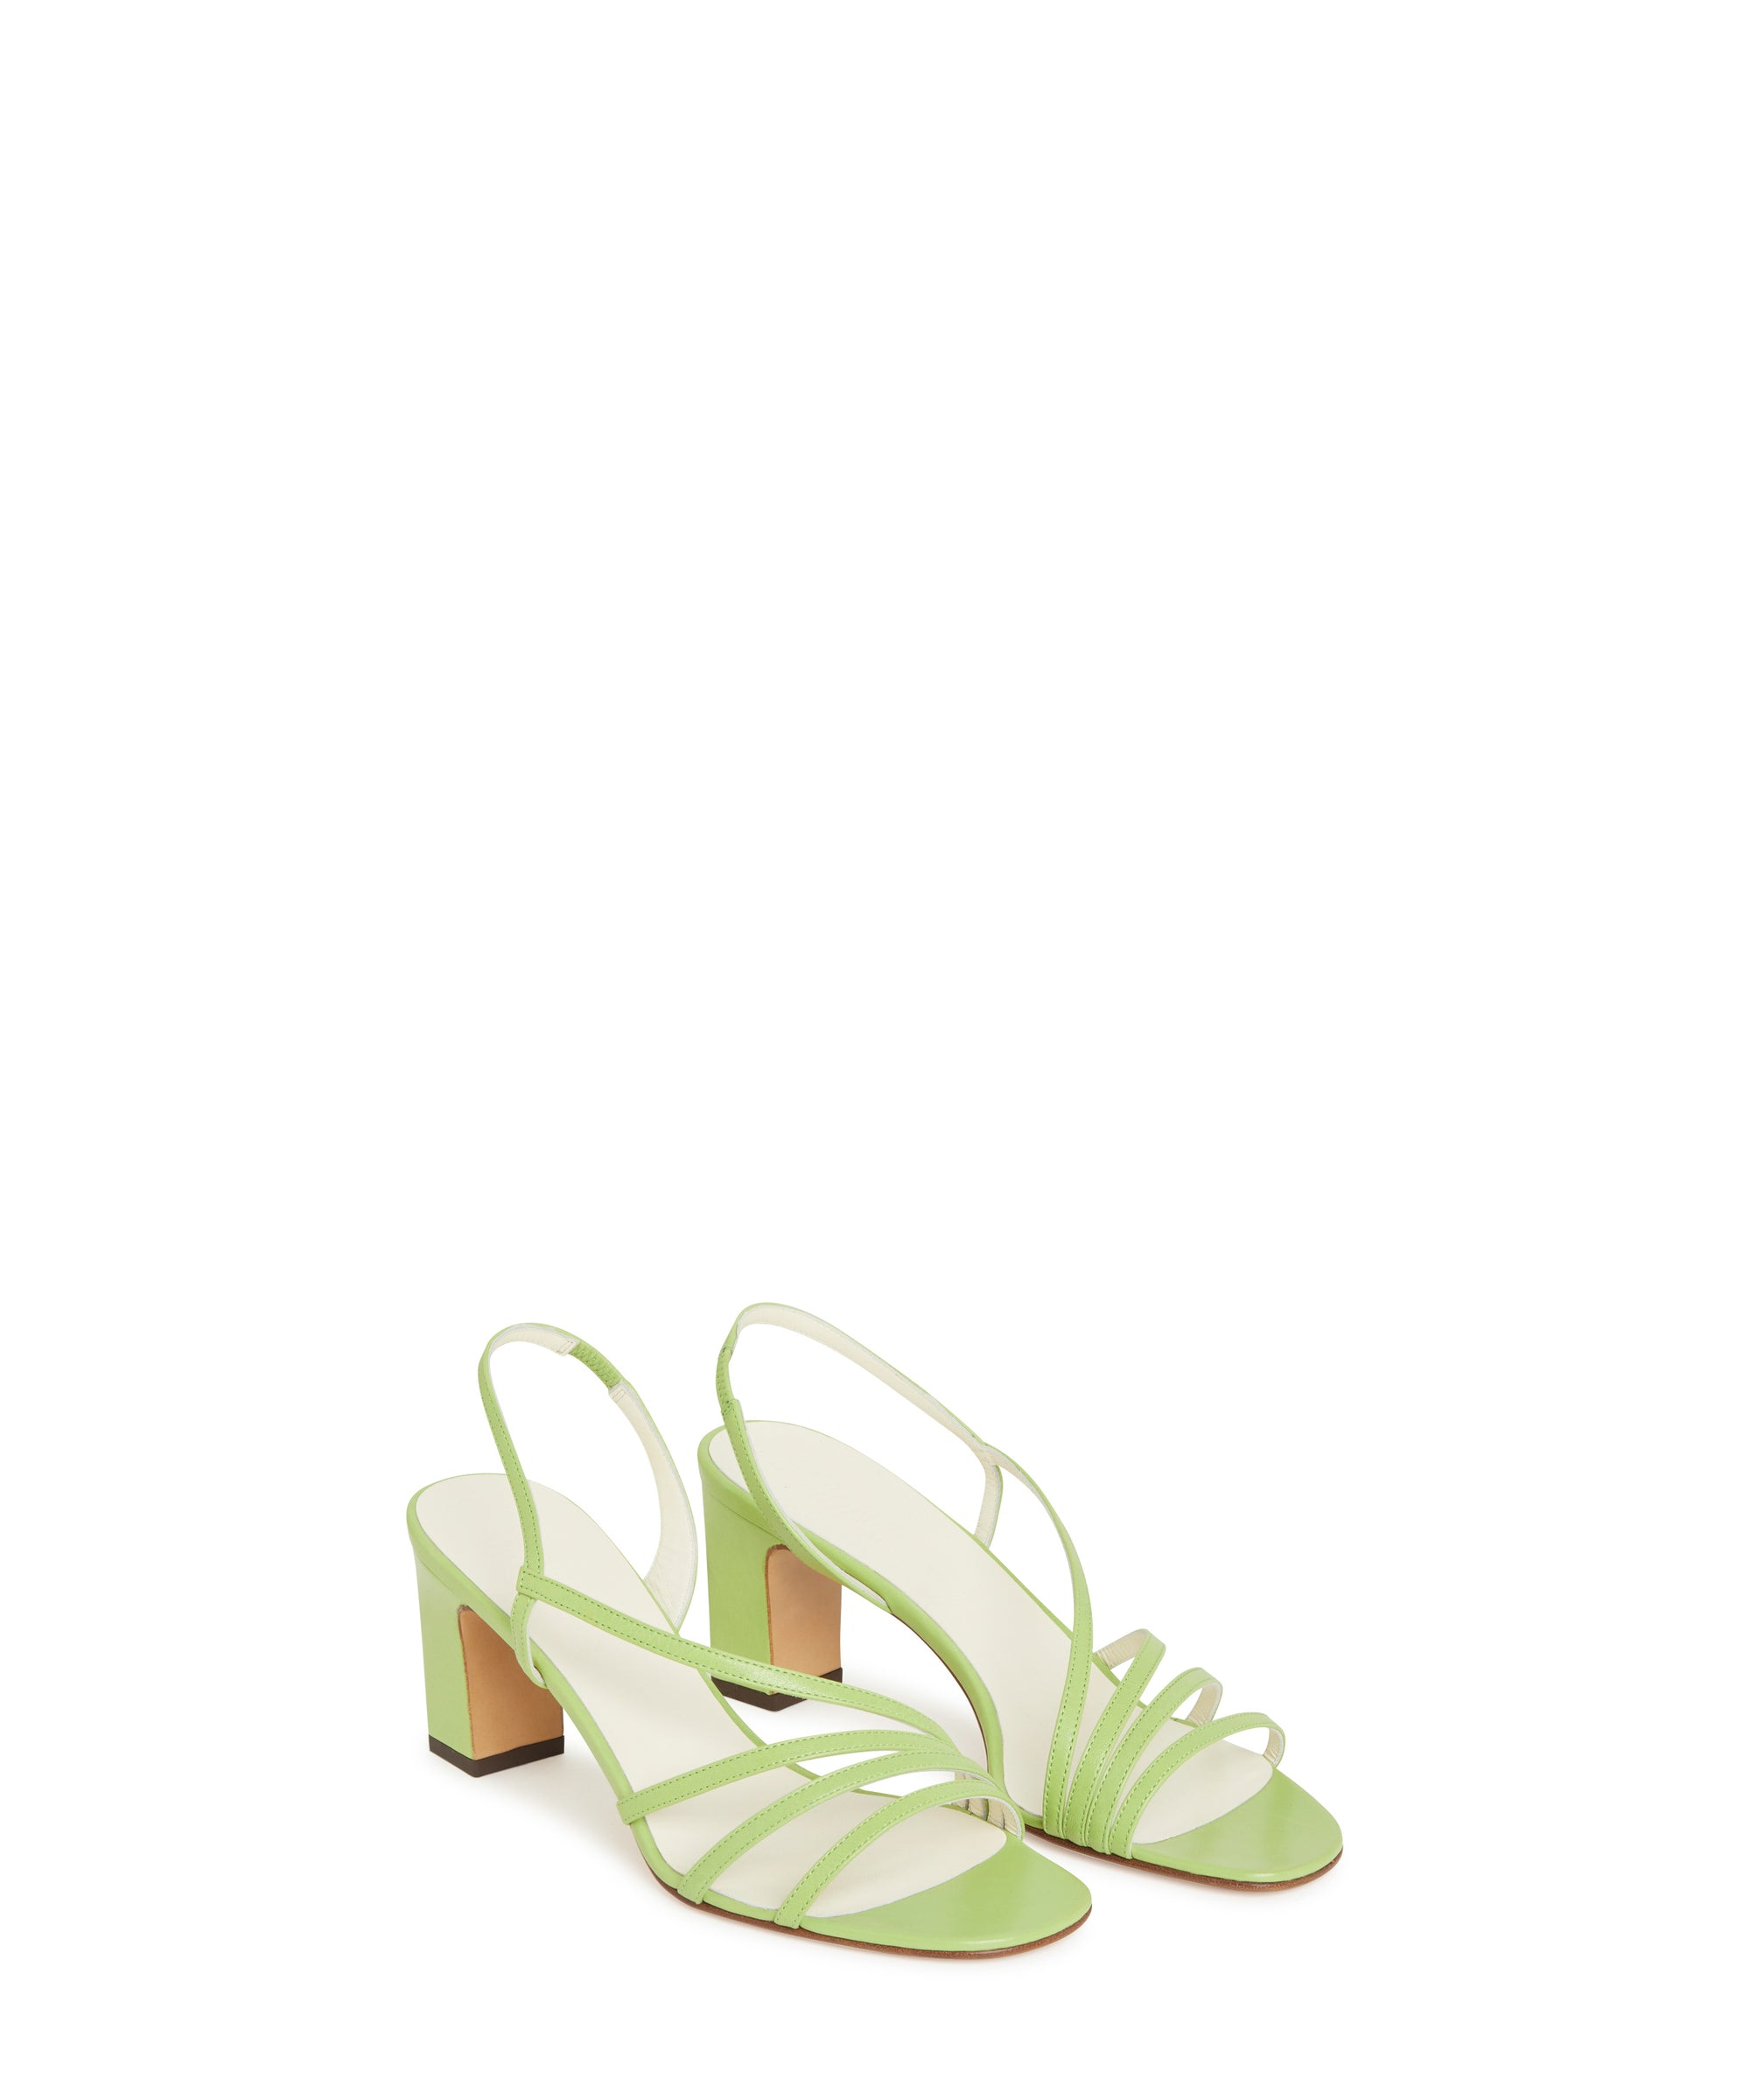 Sandales à talons Bloem 65 - Vert